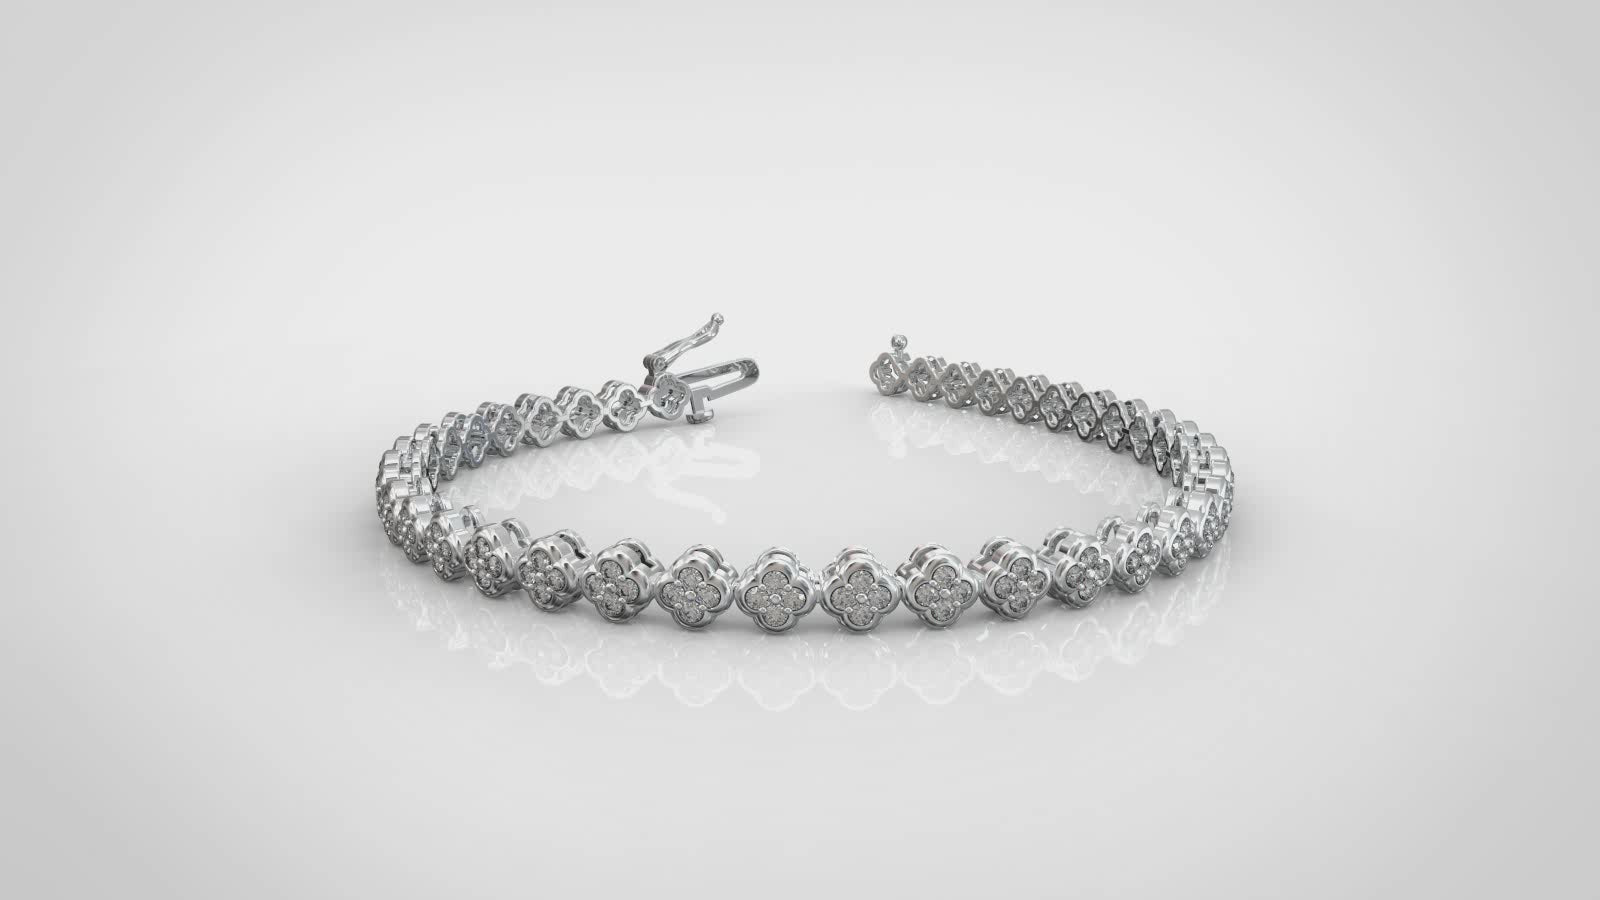 1 1/4 Carat tw Natural Diamond Clover Quatrefoil Tennis Bracelet in 925 Sterling Silver Alhambra van cleaf 